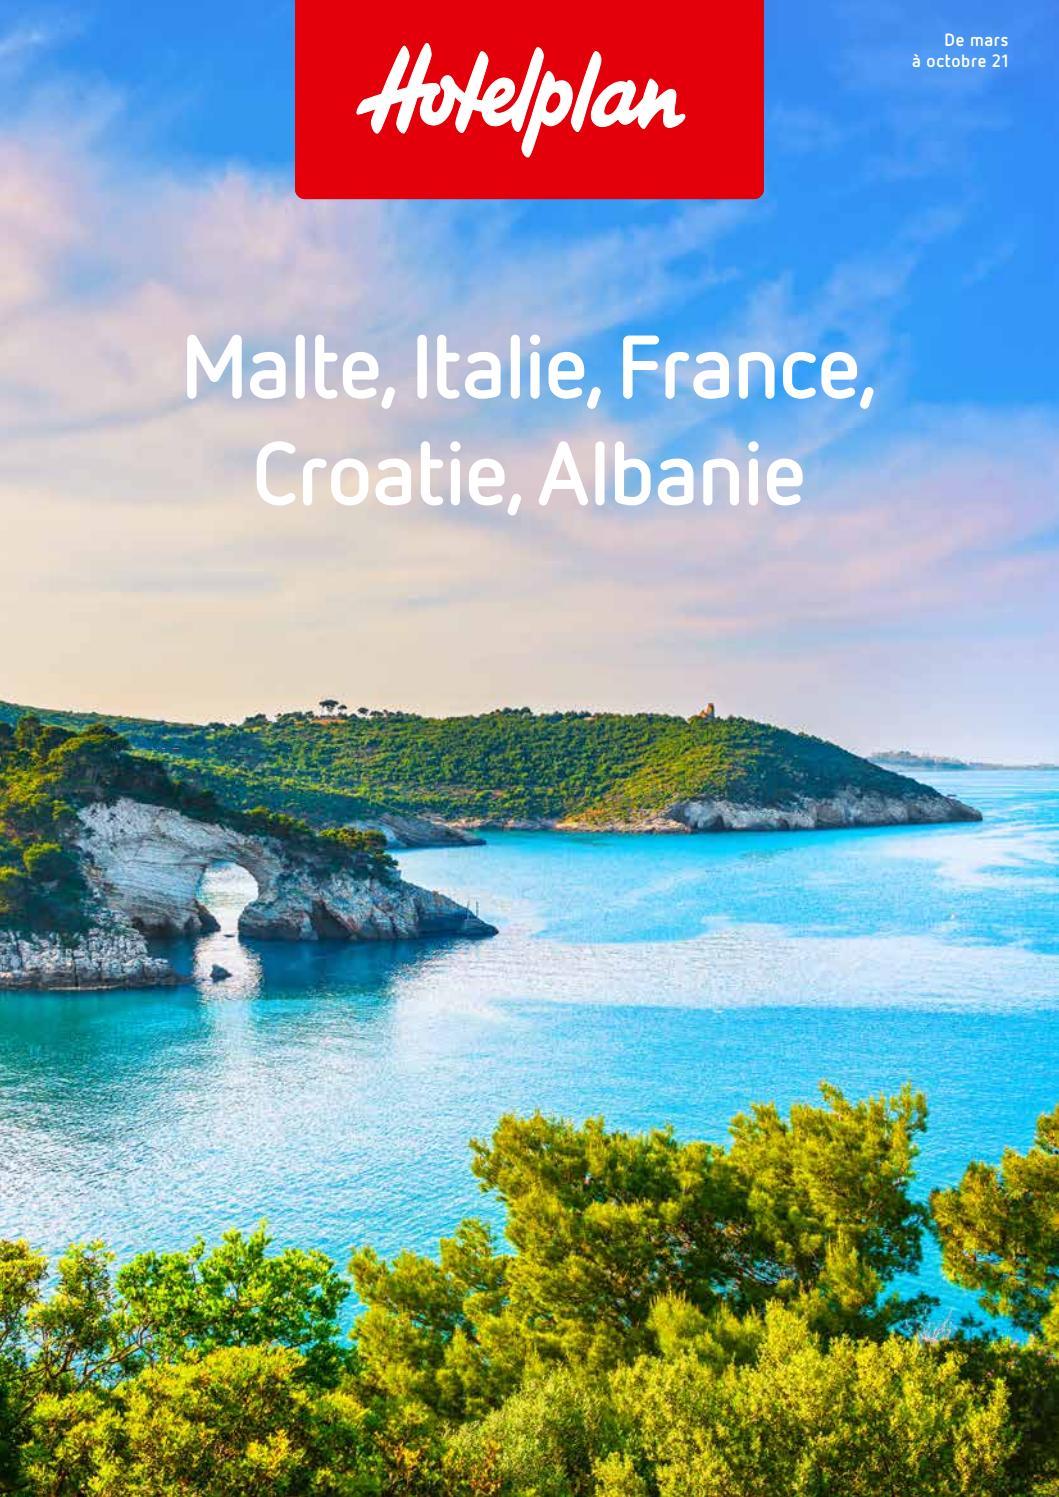 Cap sur la Riviera albanaise, l'un des joyaux les mieux gardés de l'Adriatique